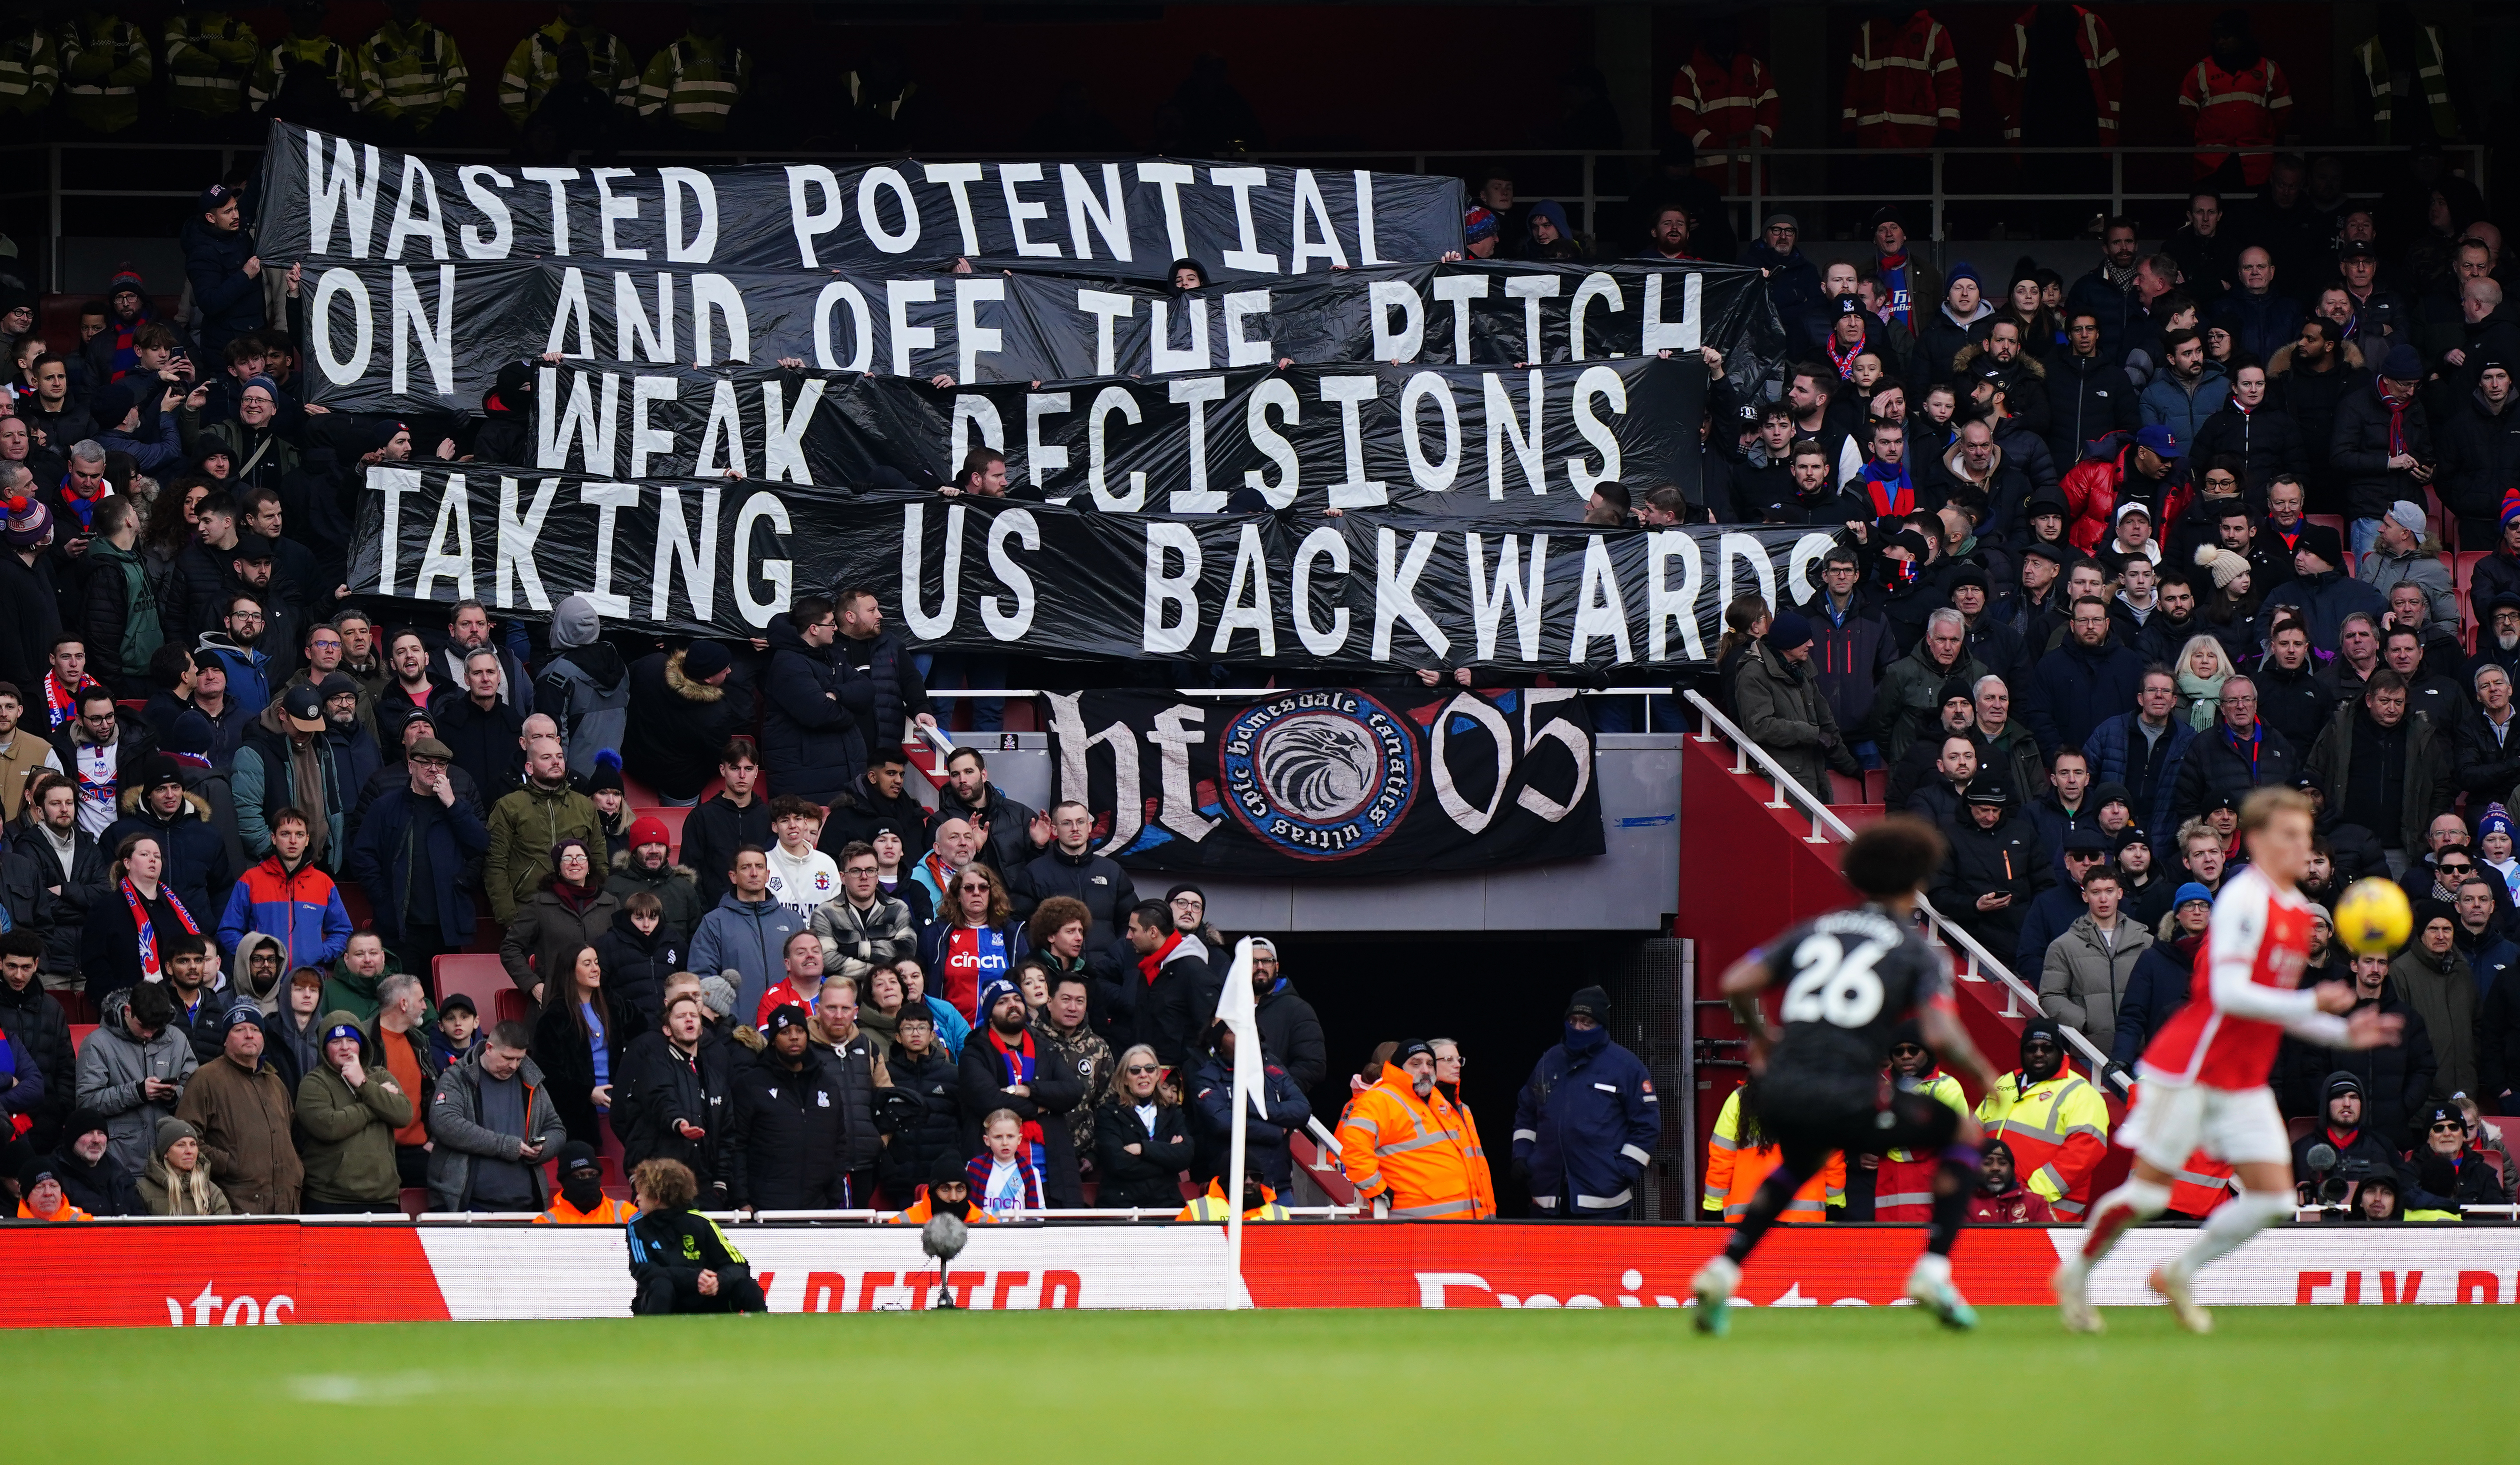 Gegen Ende des Spiels entfalteten Palace-Fans ein Banner